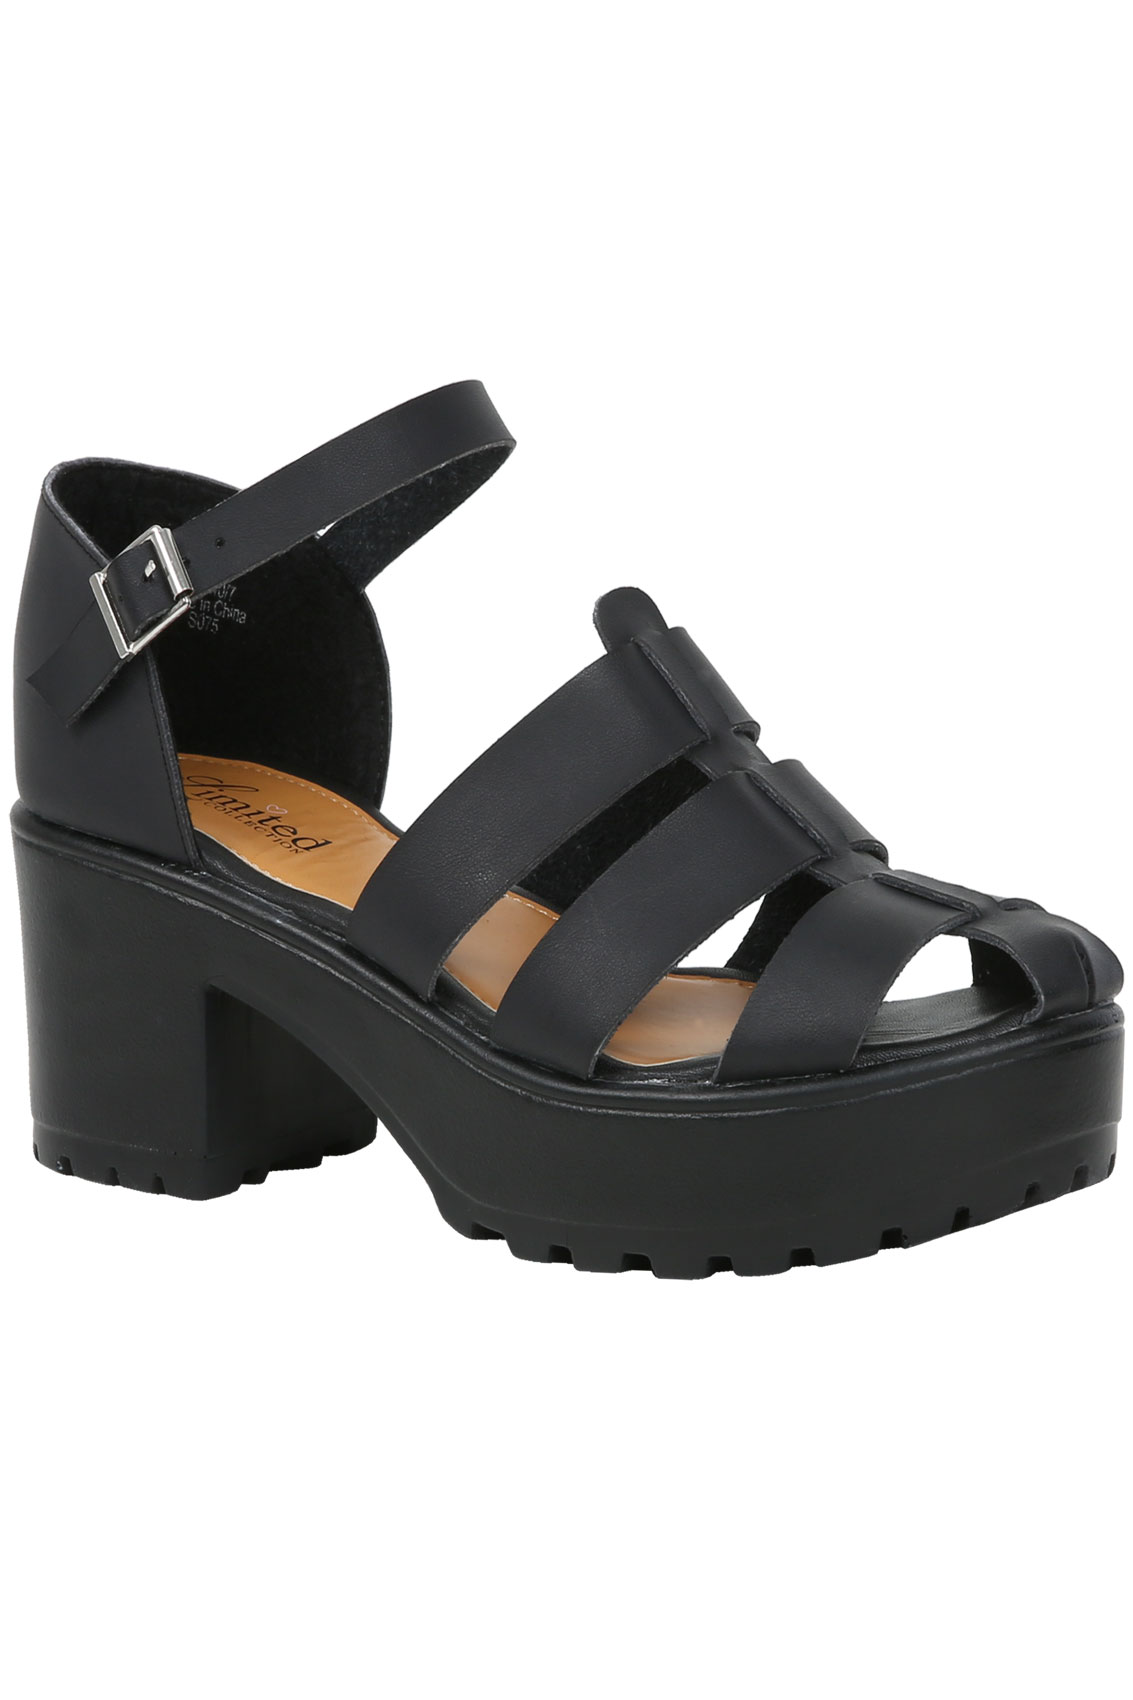 Black Platform Gladiator Wide Fit Sandals size 4,5,6,7,8,9